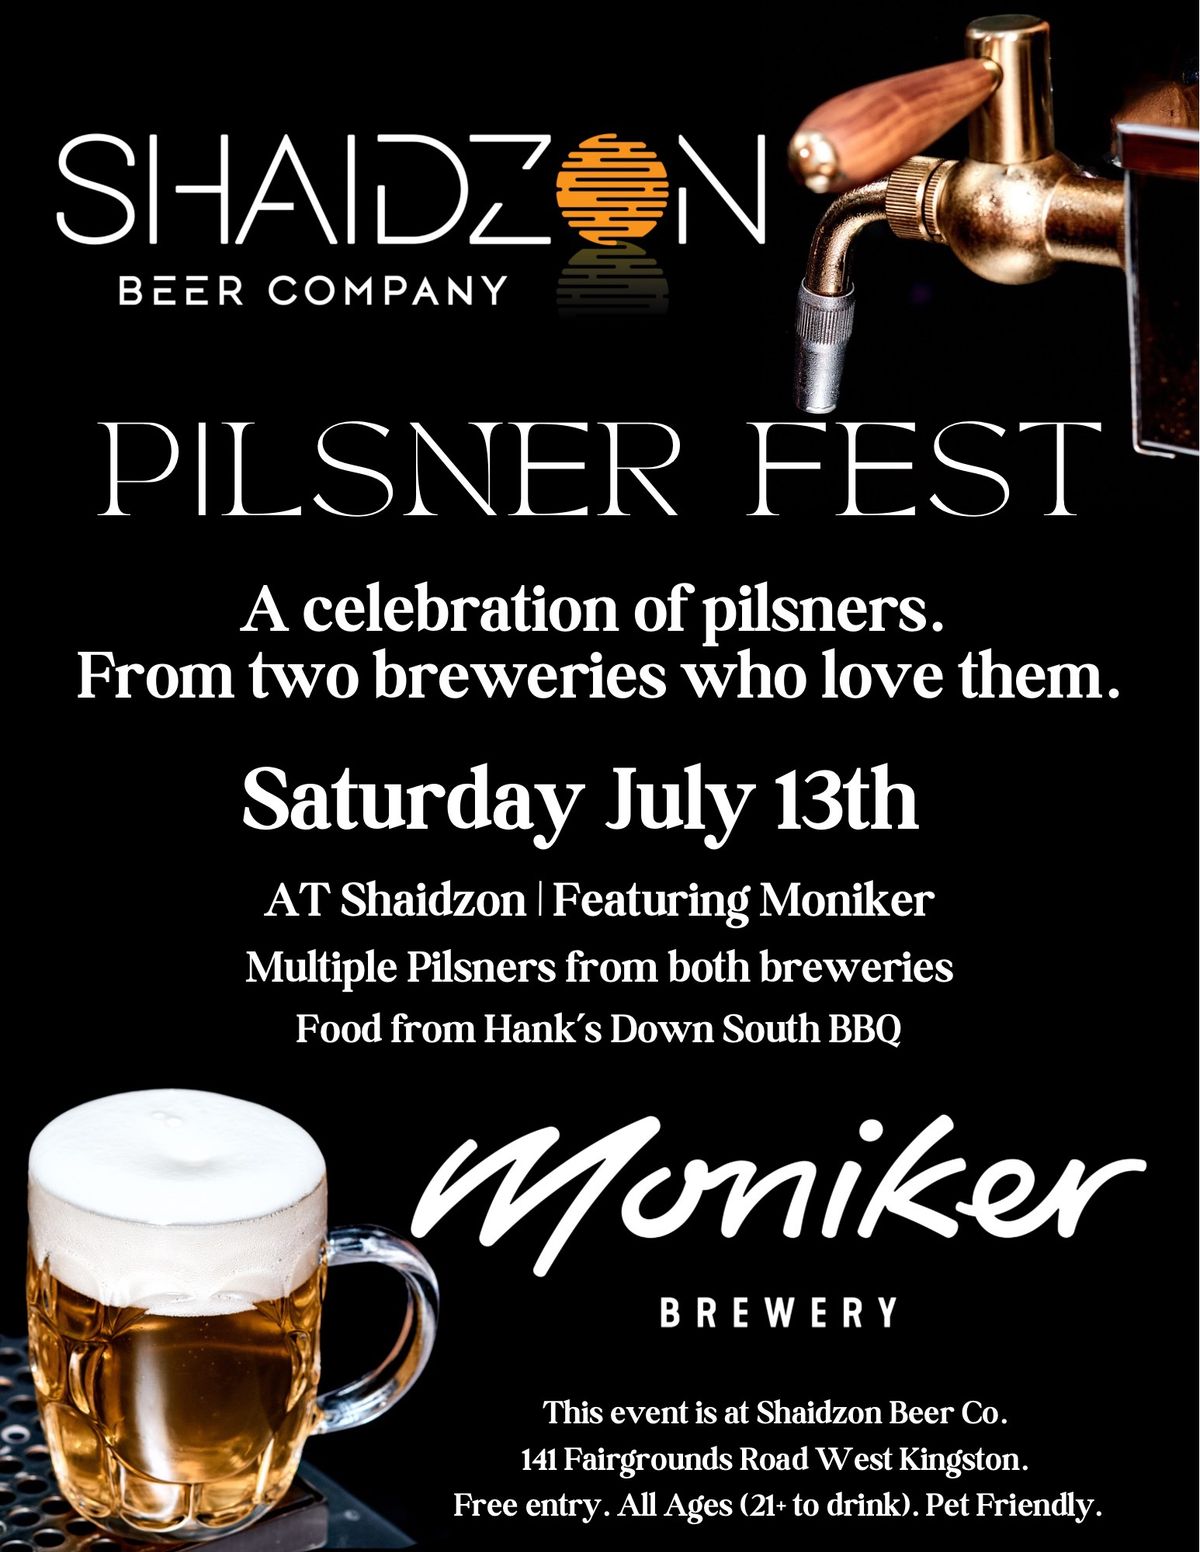 Pilsner Fest - Featuring Moniker